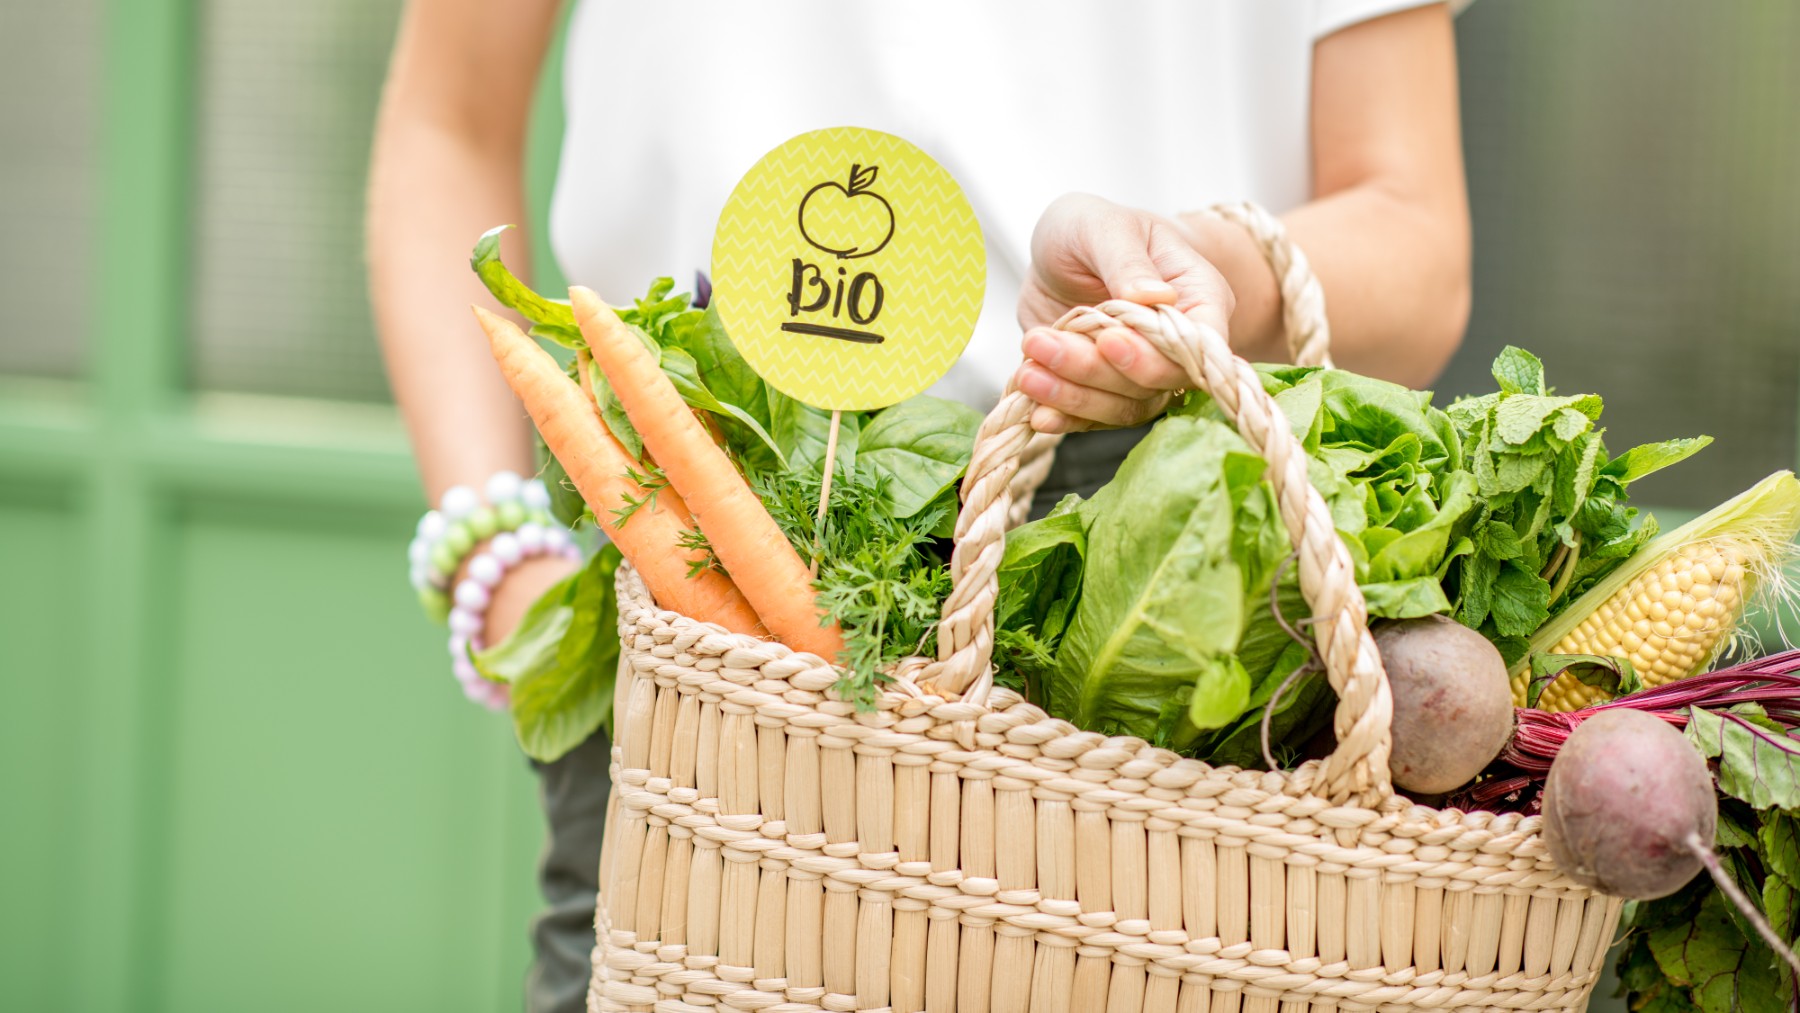 Los consumidores pueden utilizar la guía de ASOBIO con los cinco consejos para comprar alimentos ecológicos